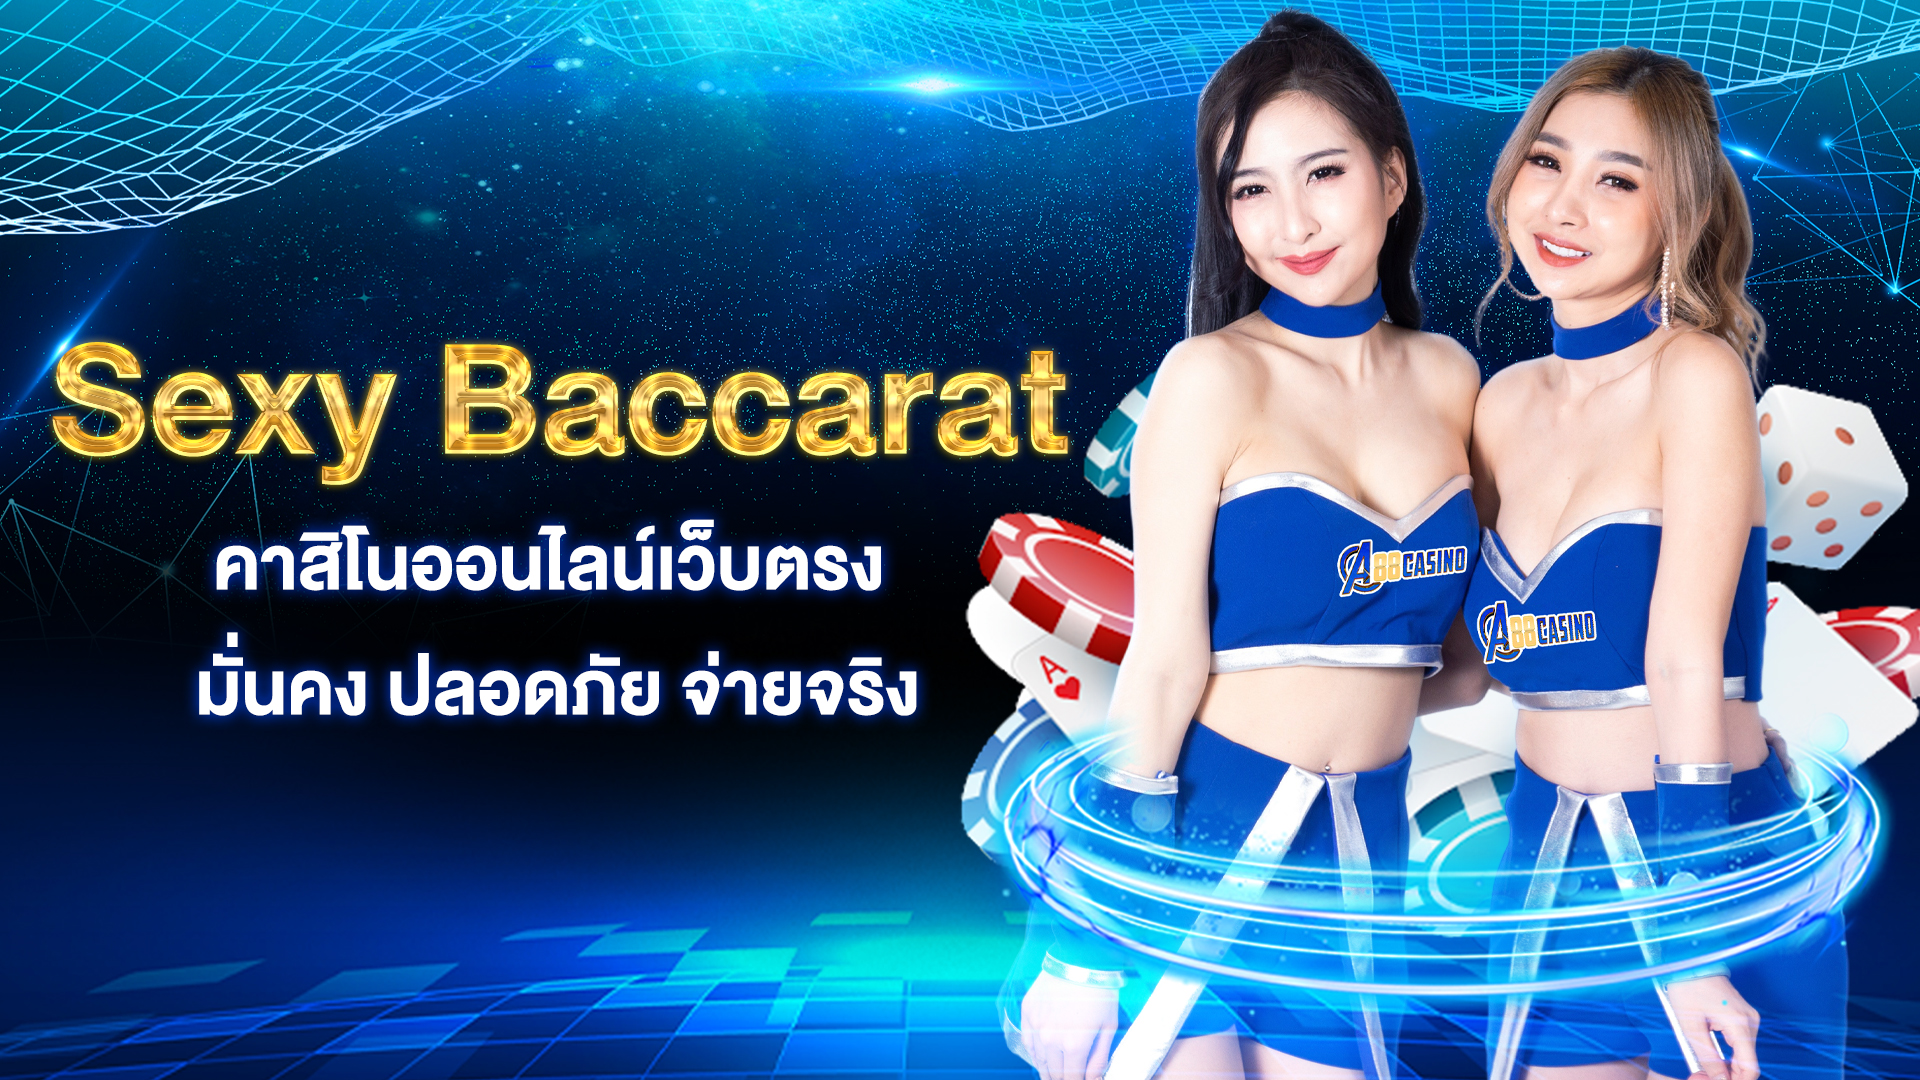 Sexy Baccarat  คาสิโนออนไลน์เว็บตรง มั่นคง ปลอดภัย จ่ายจริง